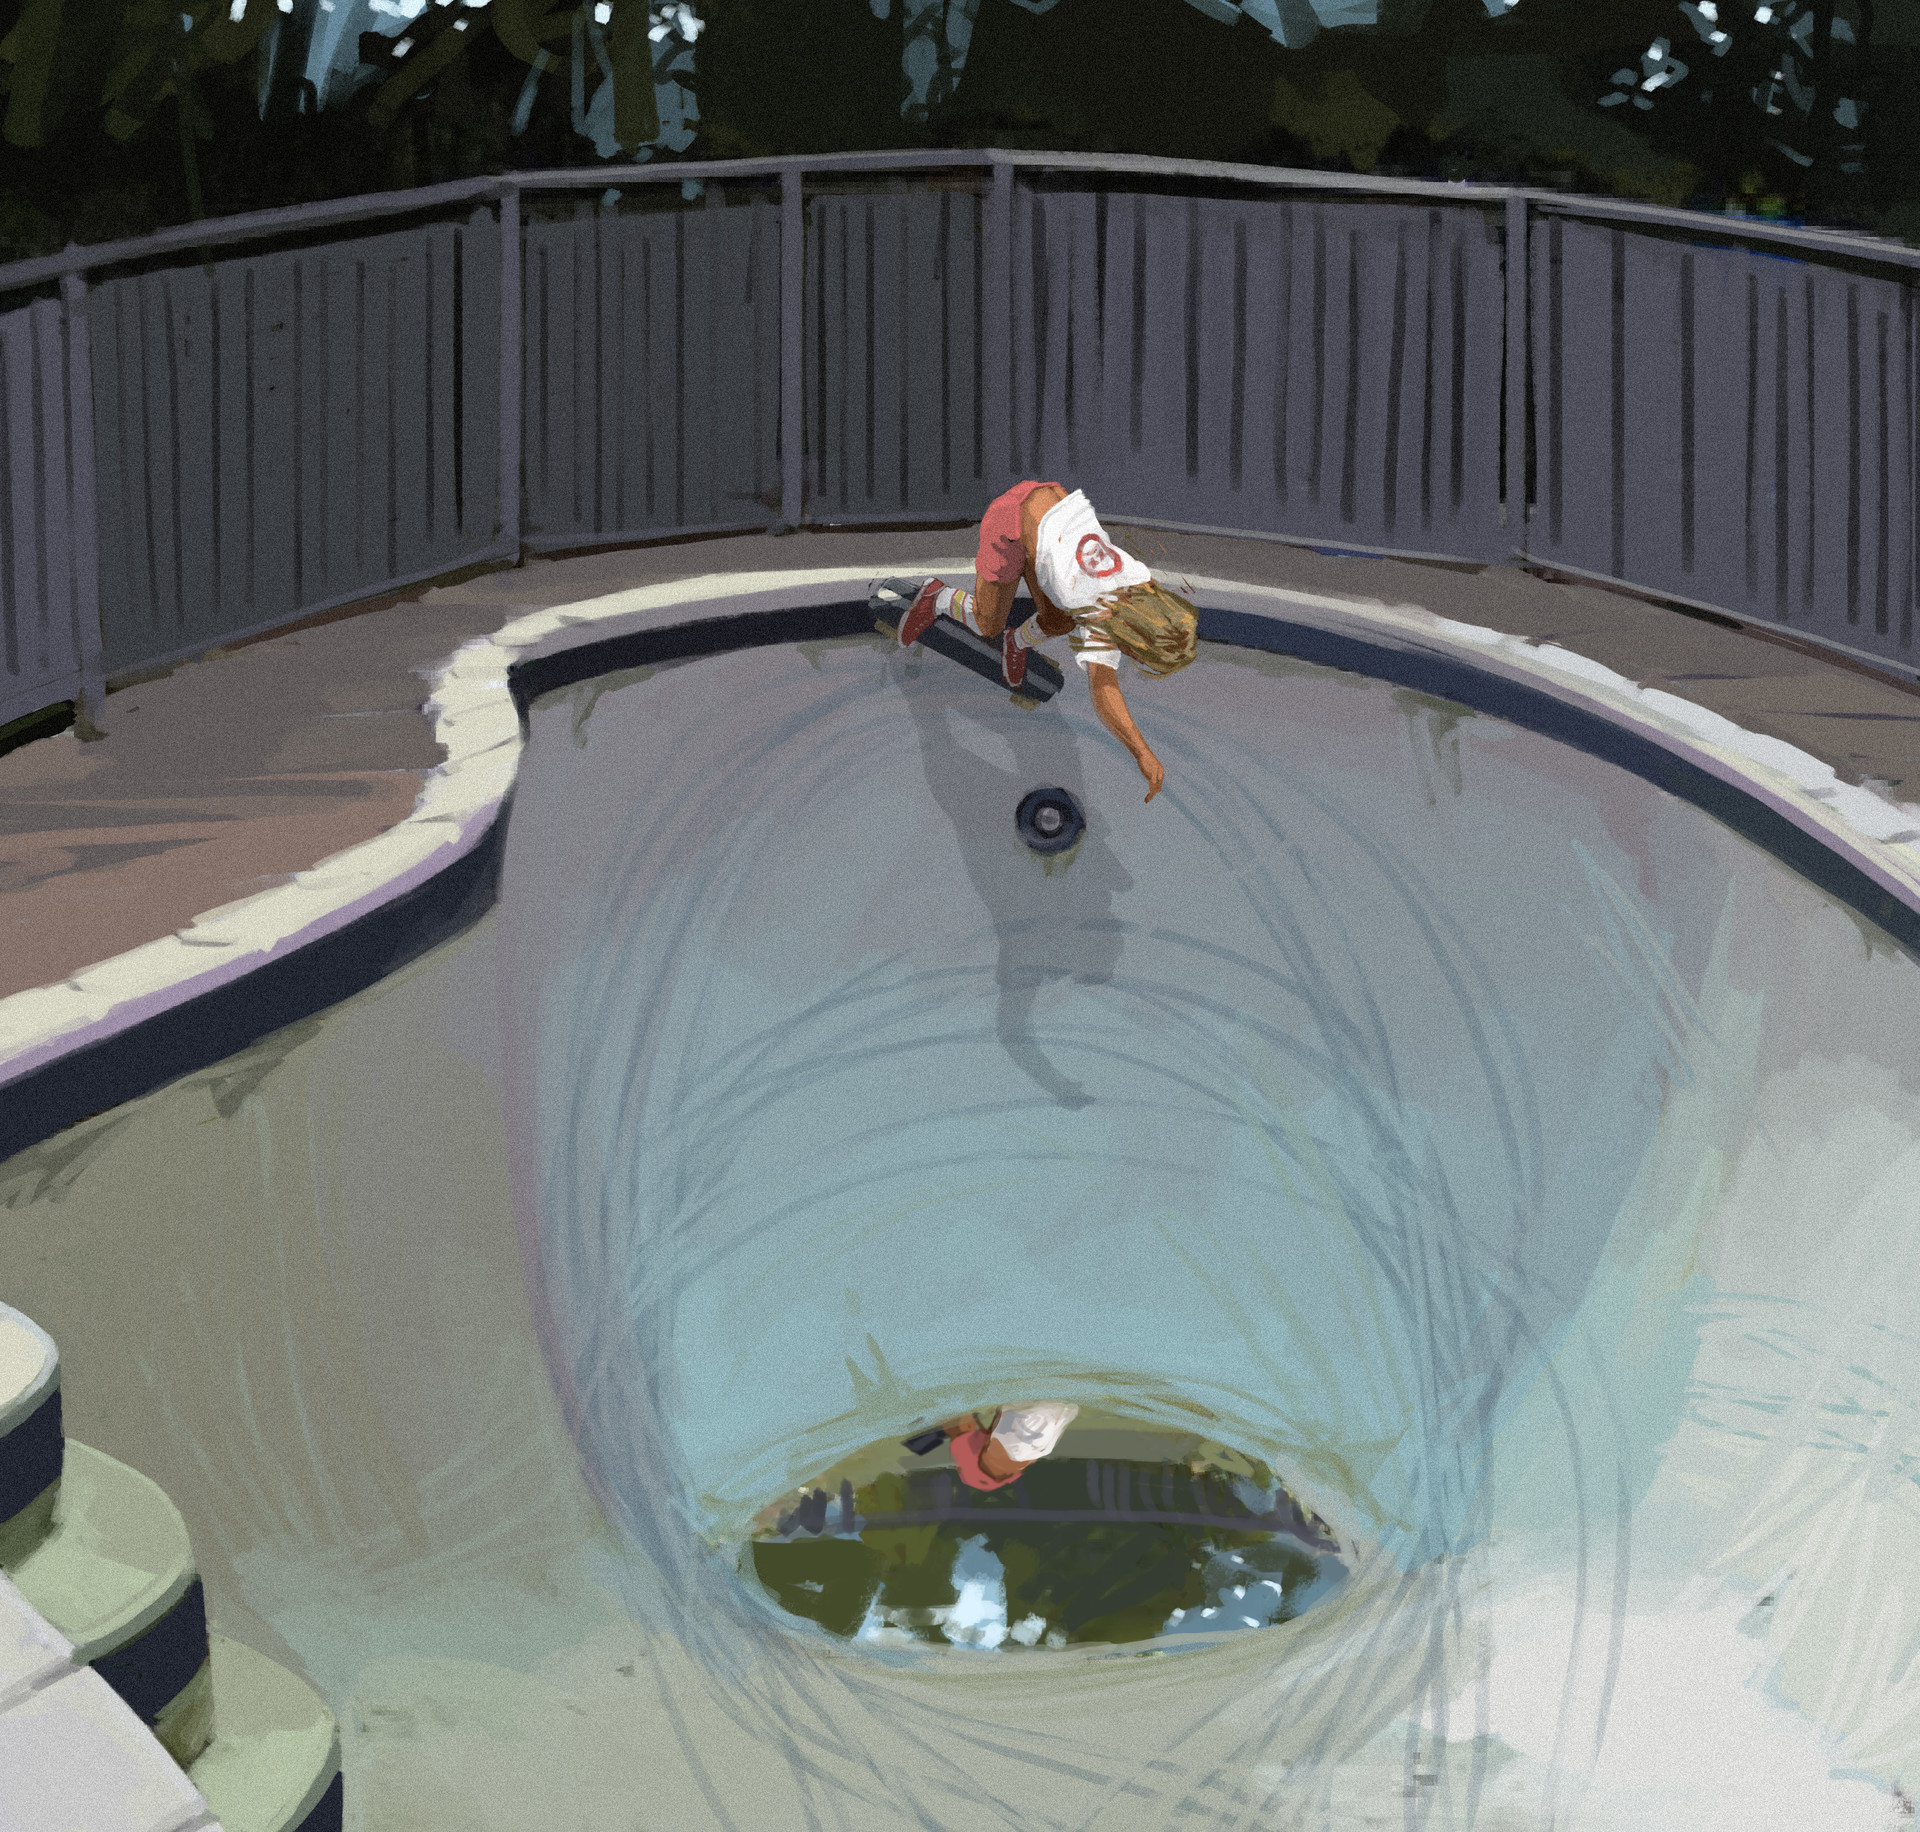 Boy skateboards in empty pool